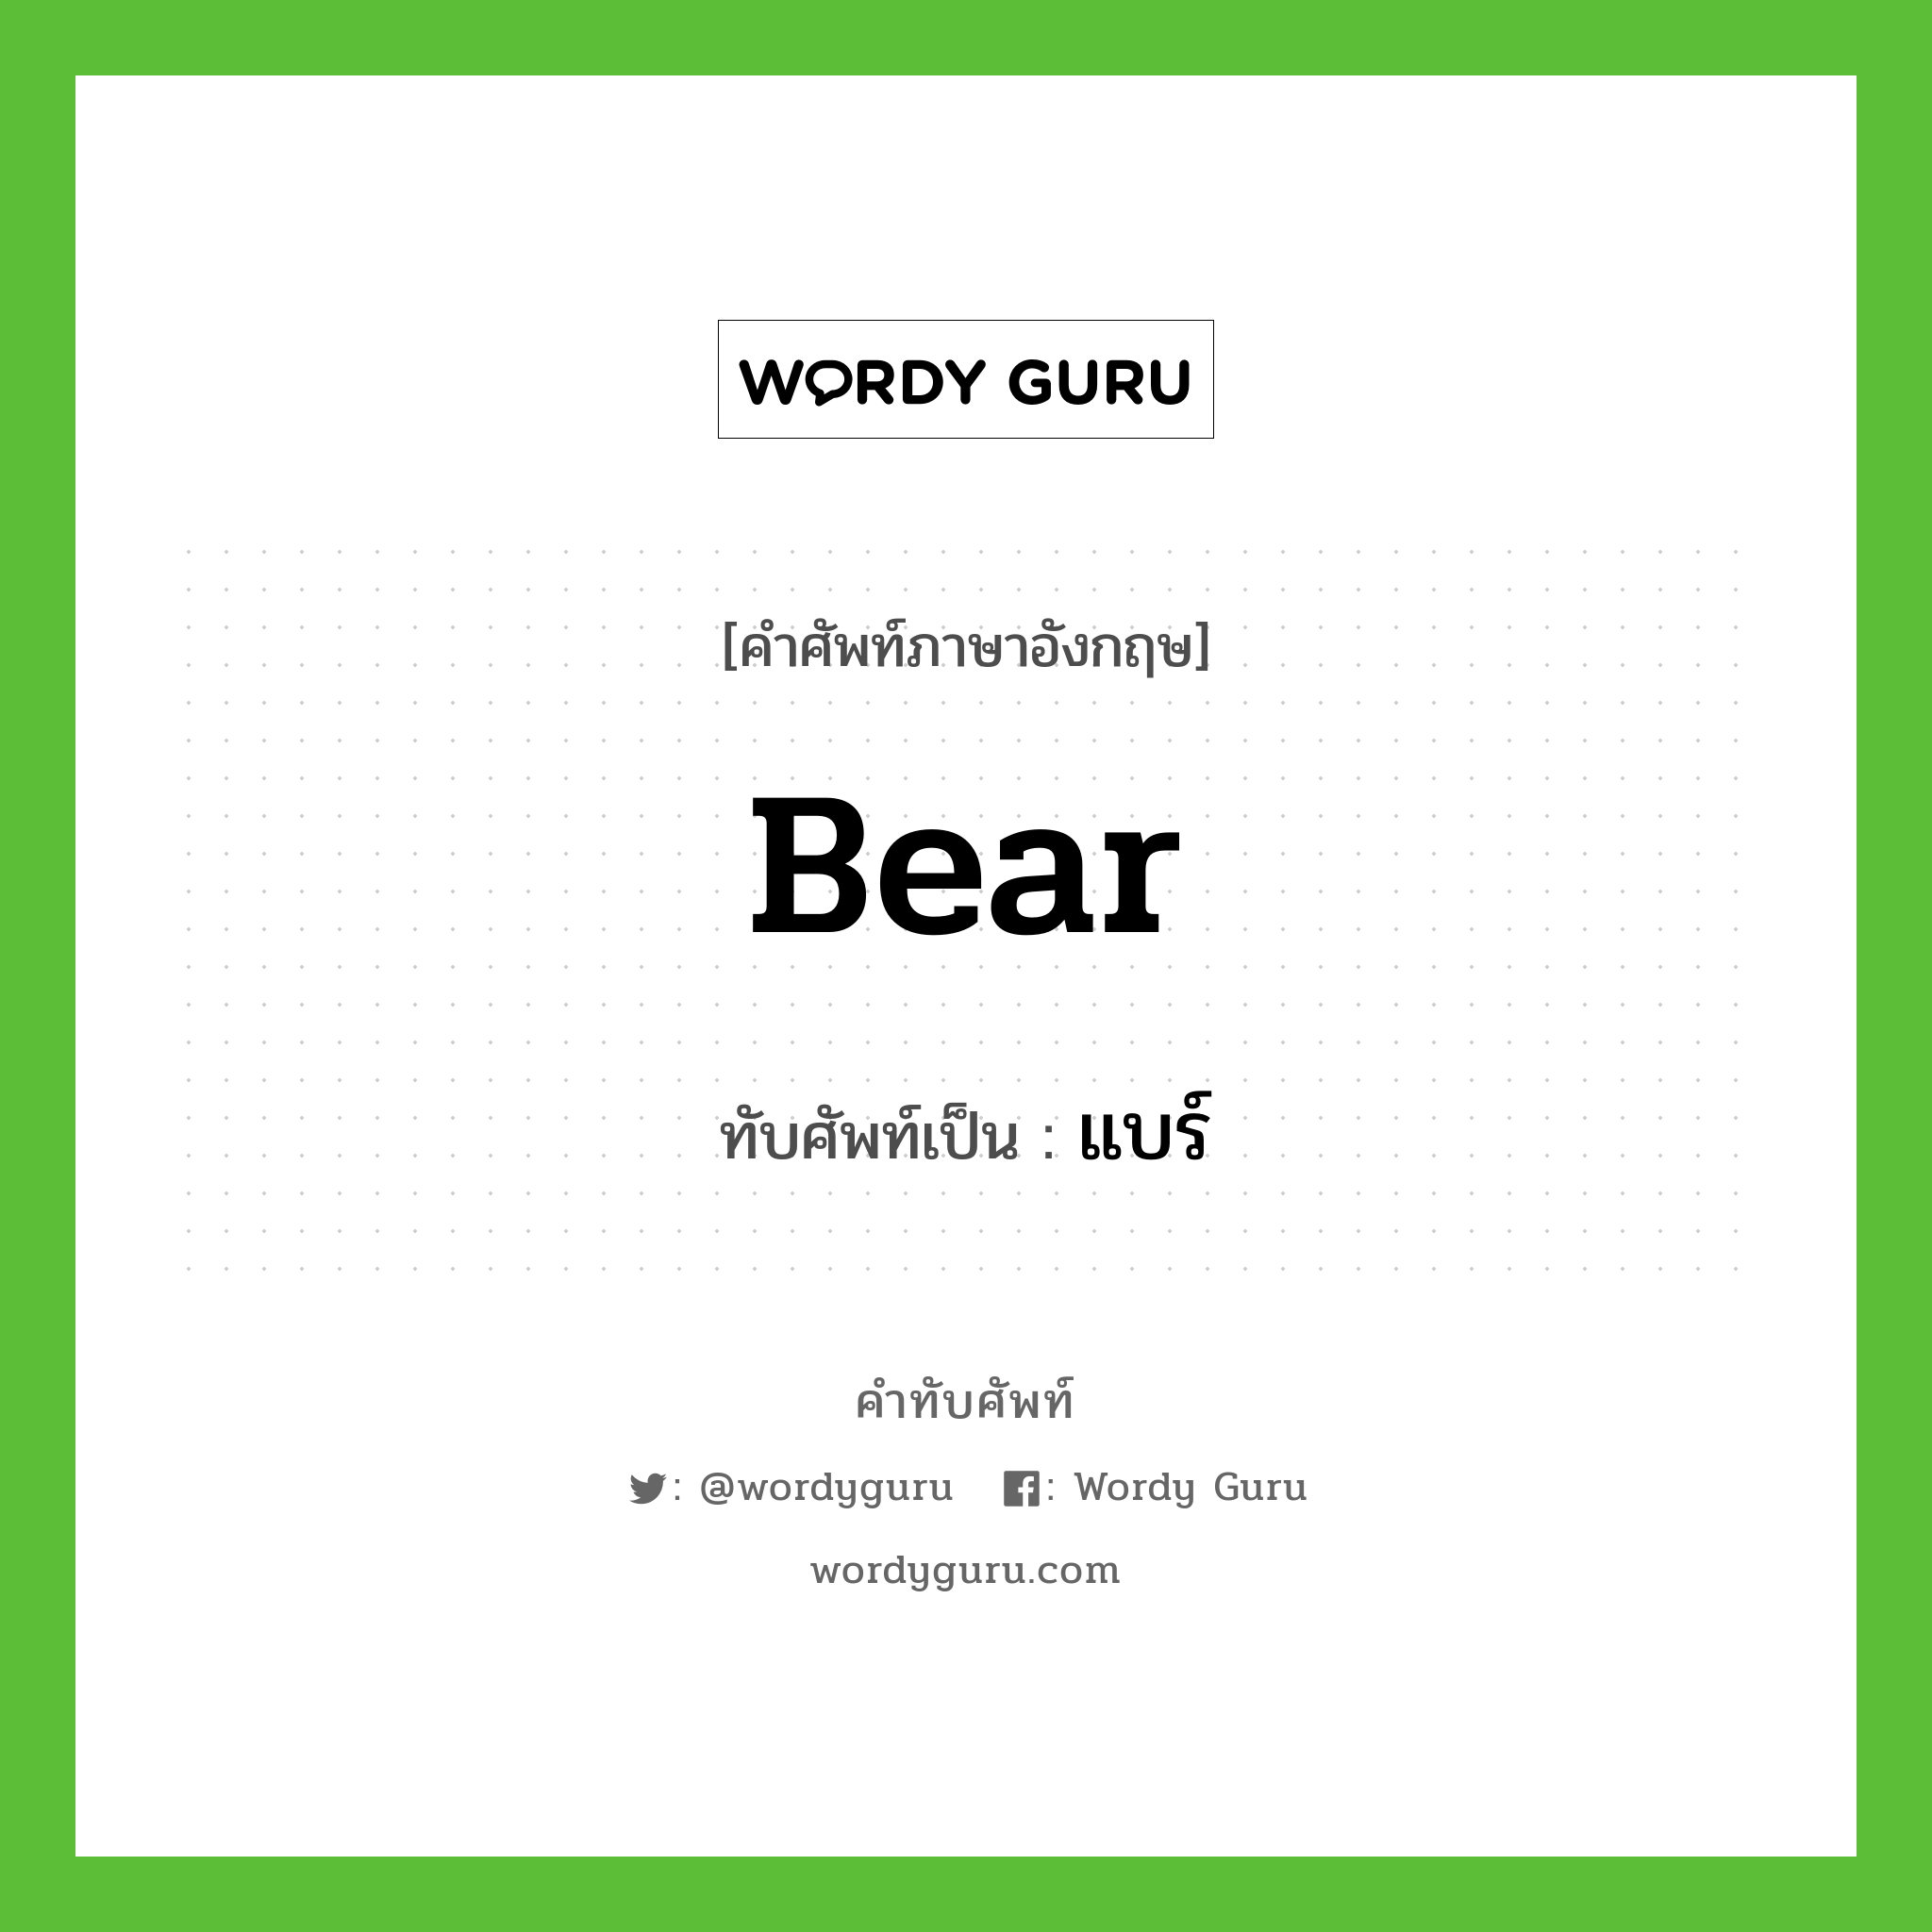 bear เขียนเป็นคำไทยว่าอะไร?, คำศัพท์ภาษาอังกฤษ bear ทับศัพท์เป็น แบร์